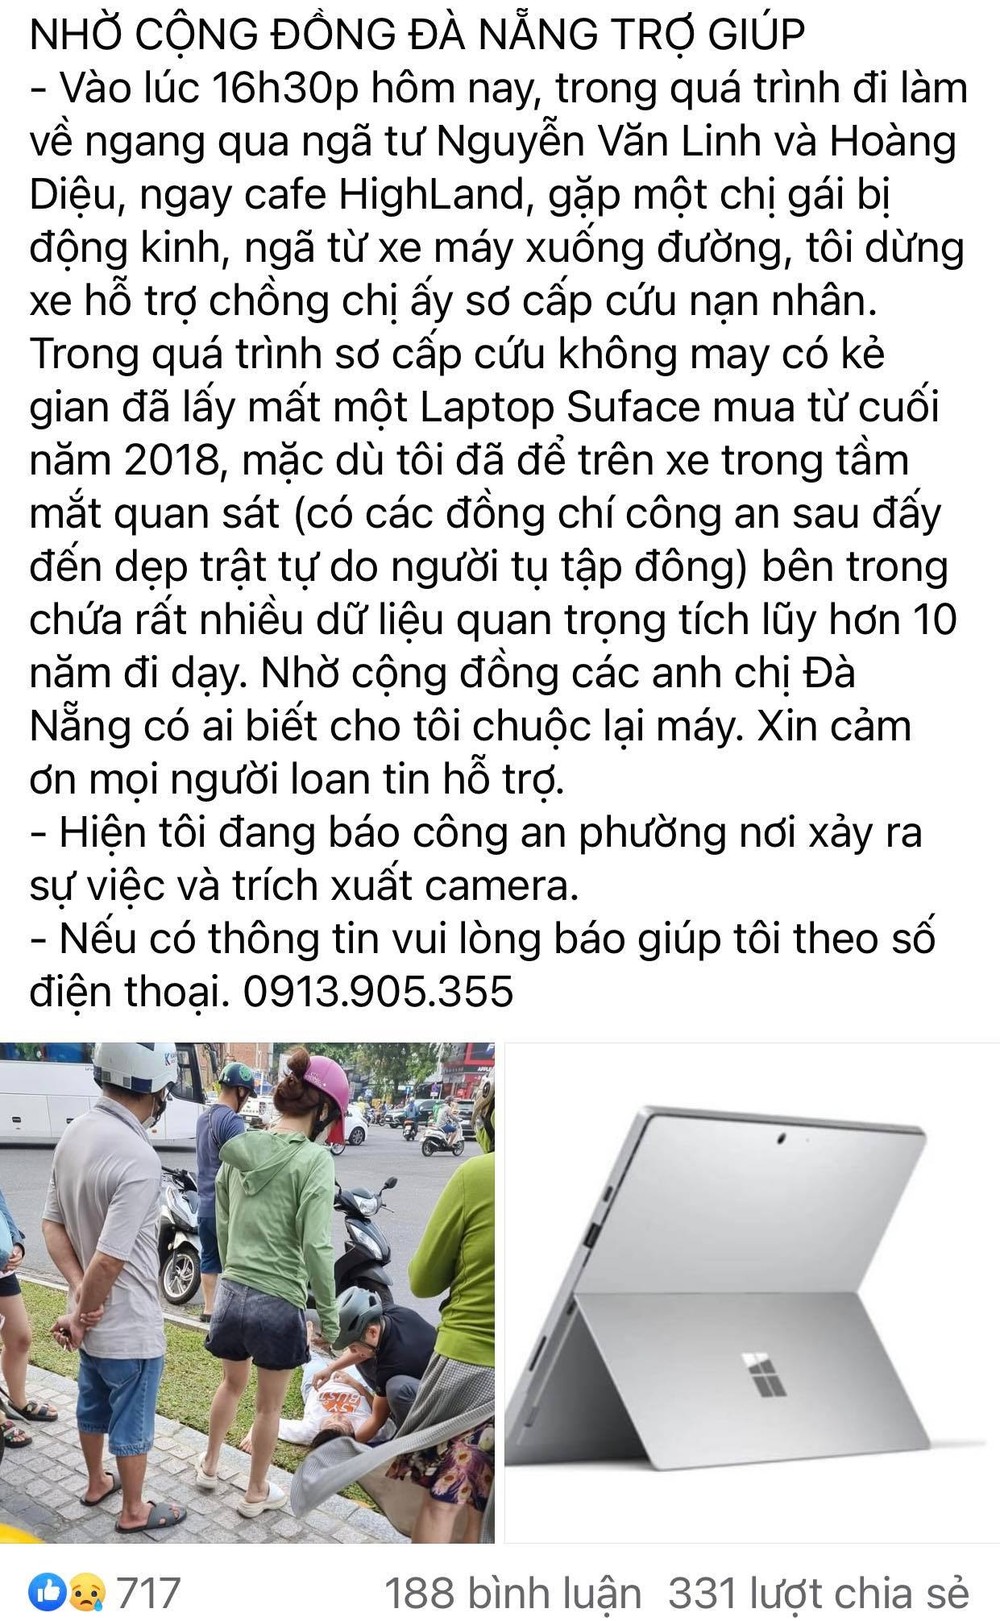 Câu chuyện được lan truyền trên nhiền diễn đàn, trang cộng đồng tại thành phố Đà Nẵng